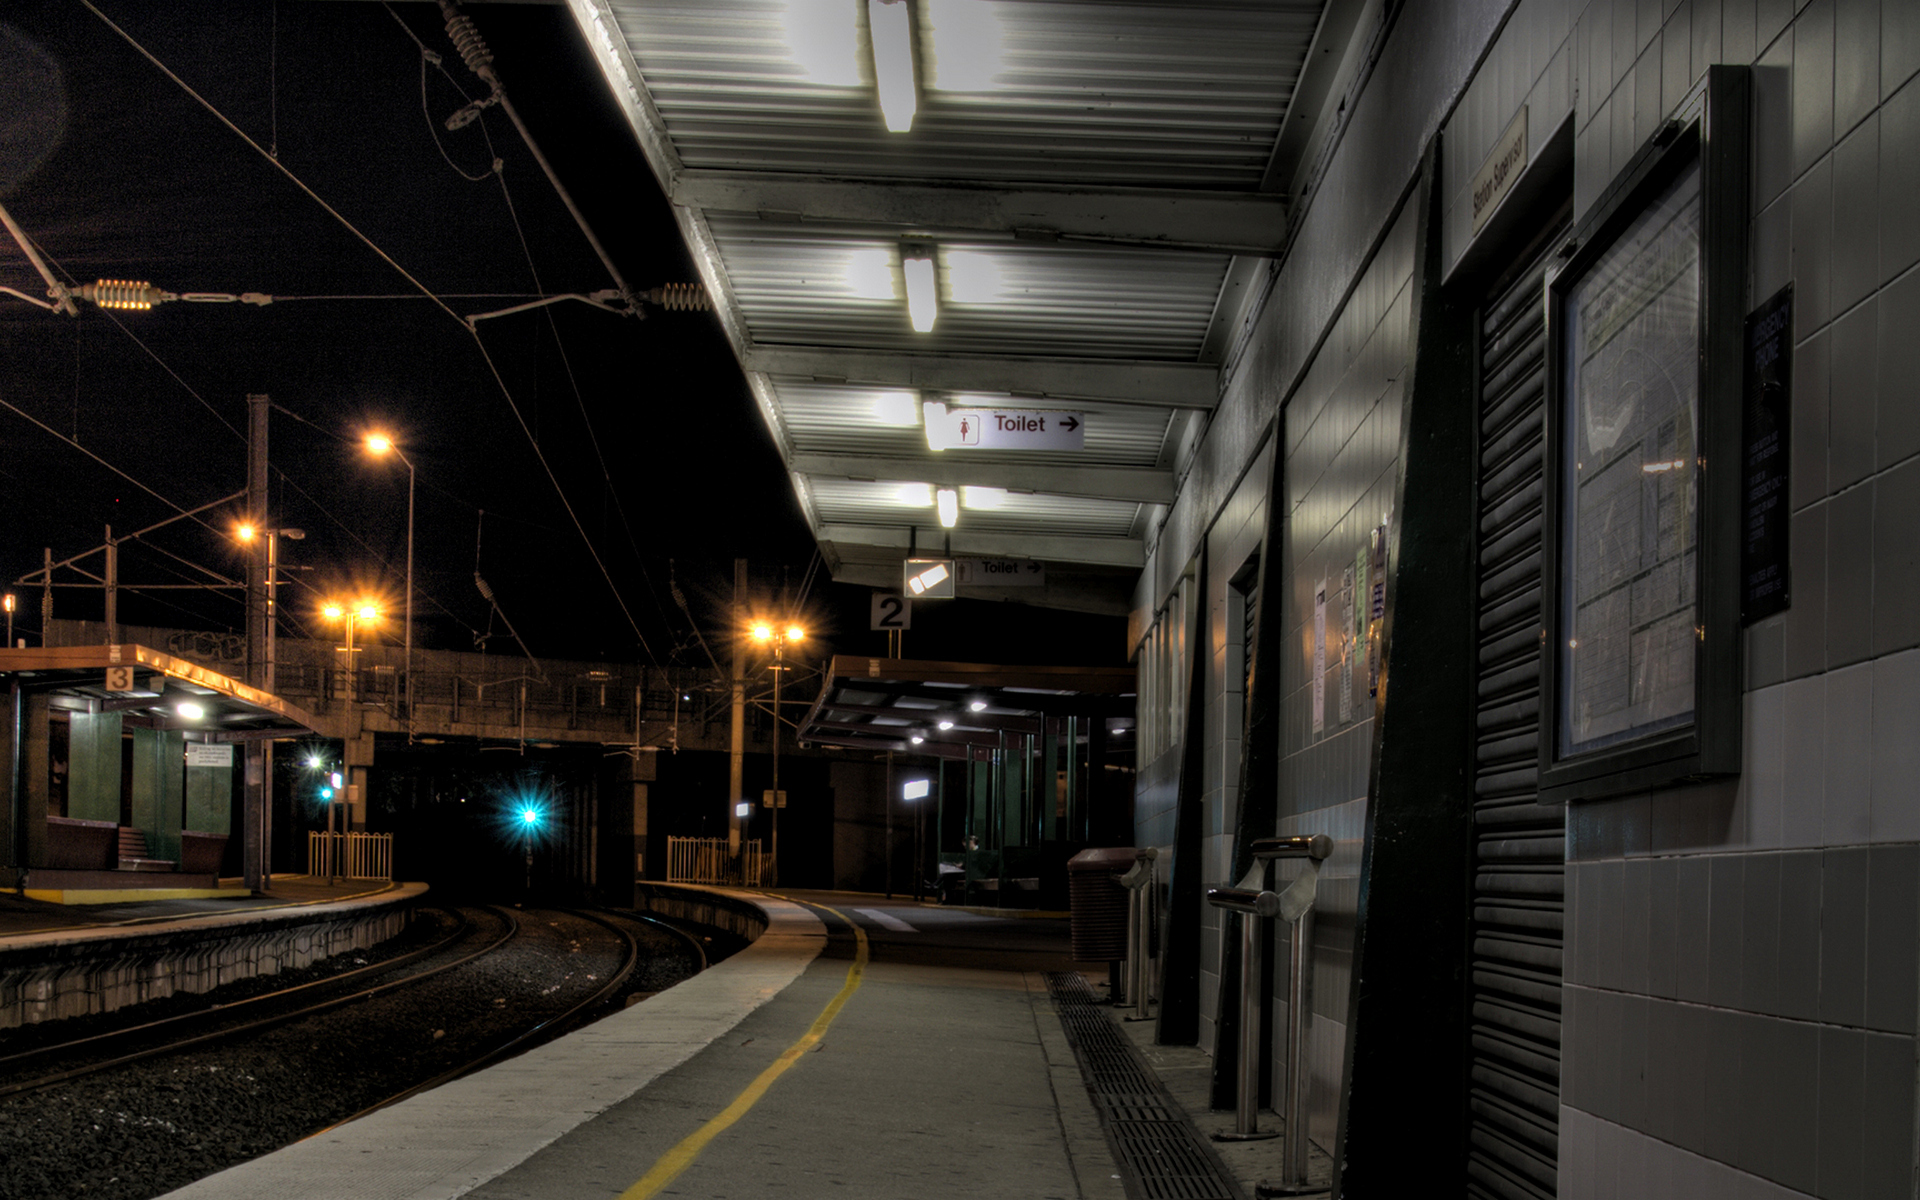 Включи спокойную станцию. Станция метро перрон. Ночной вокзал. Ночной поезд. Ночной перрон вокзала.